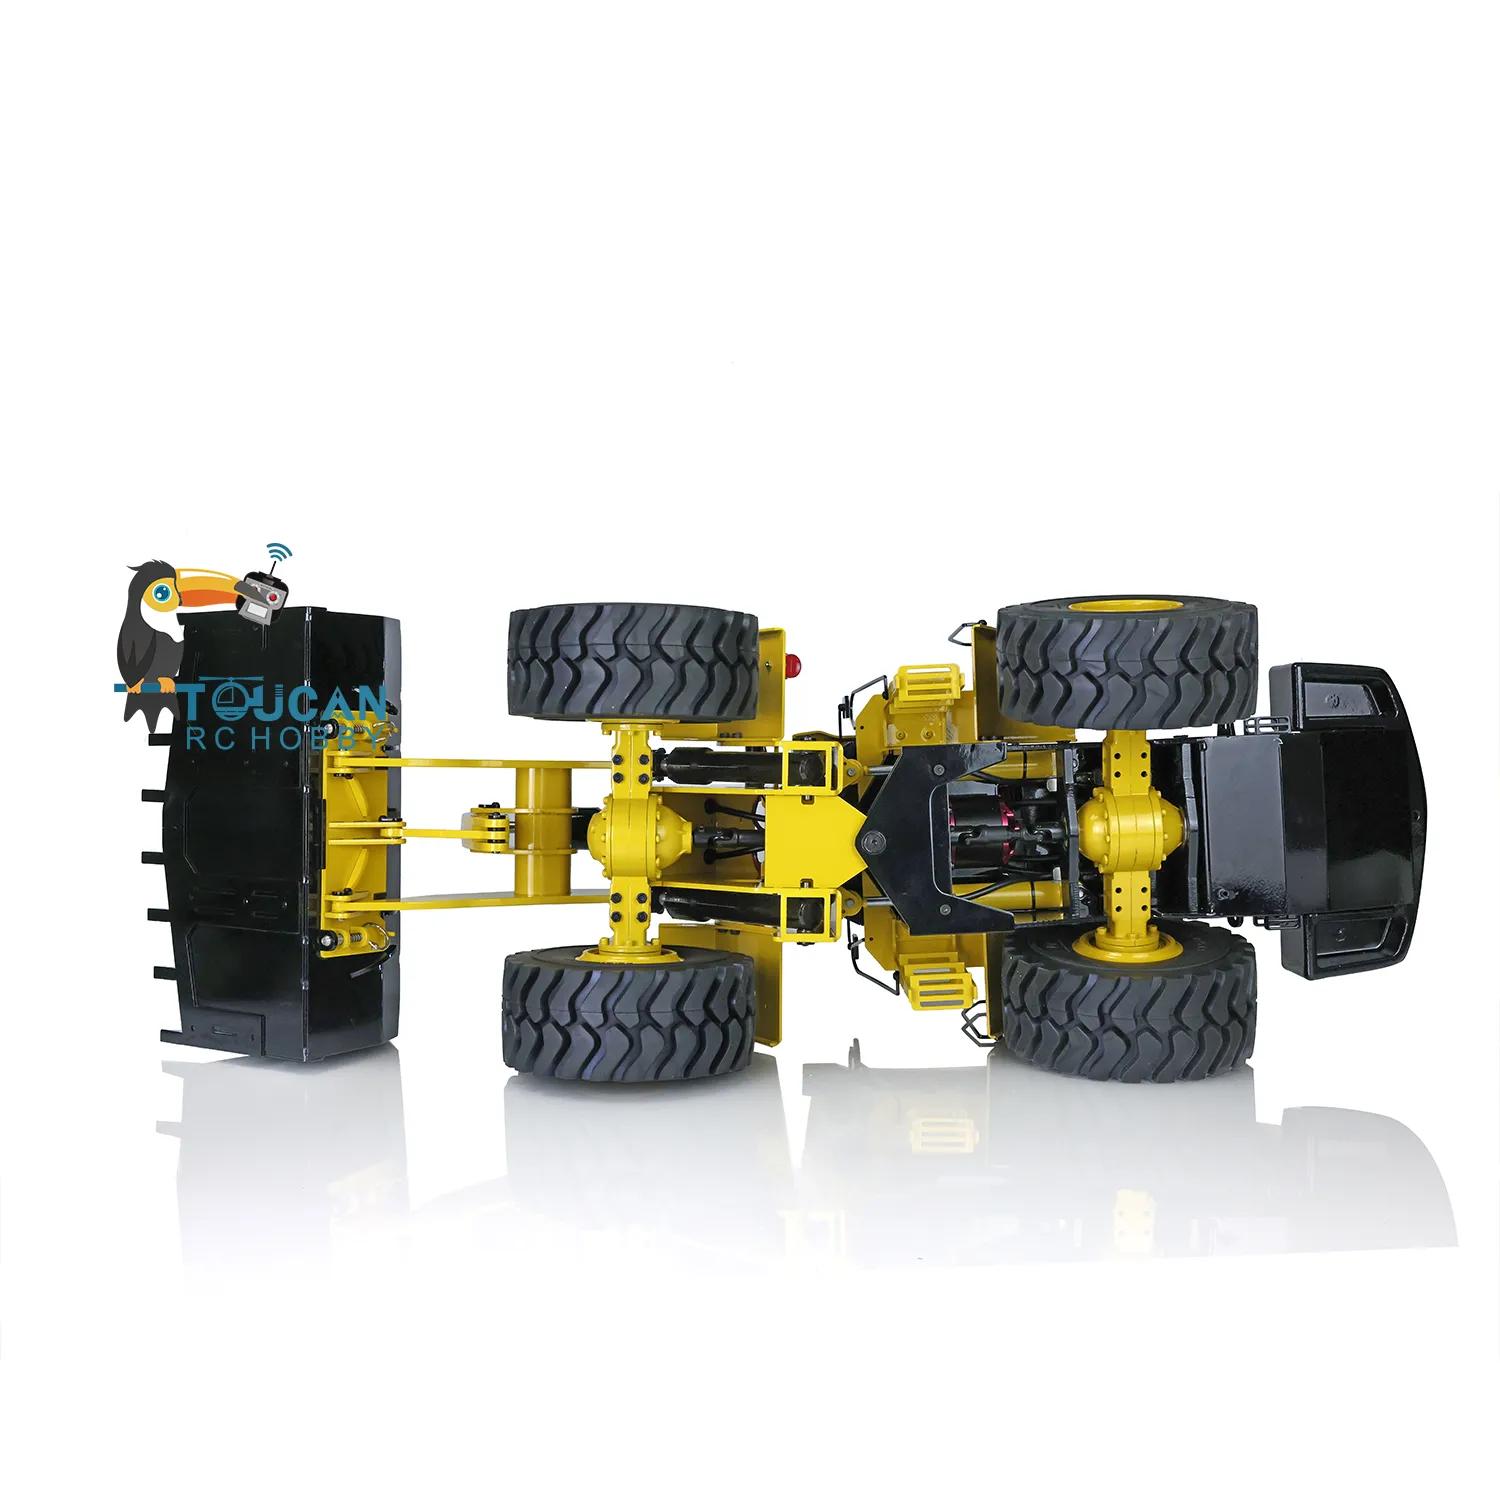 Hydraulic Rc Car: Powerful movements with hydraulic fluid